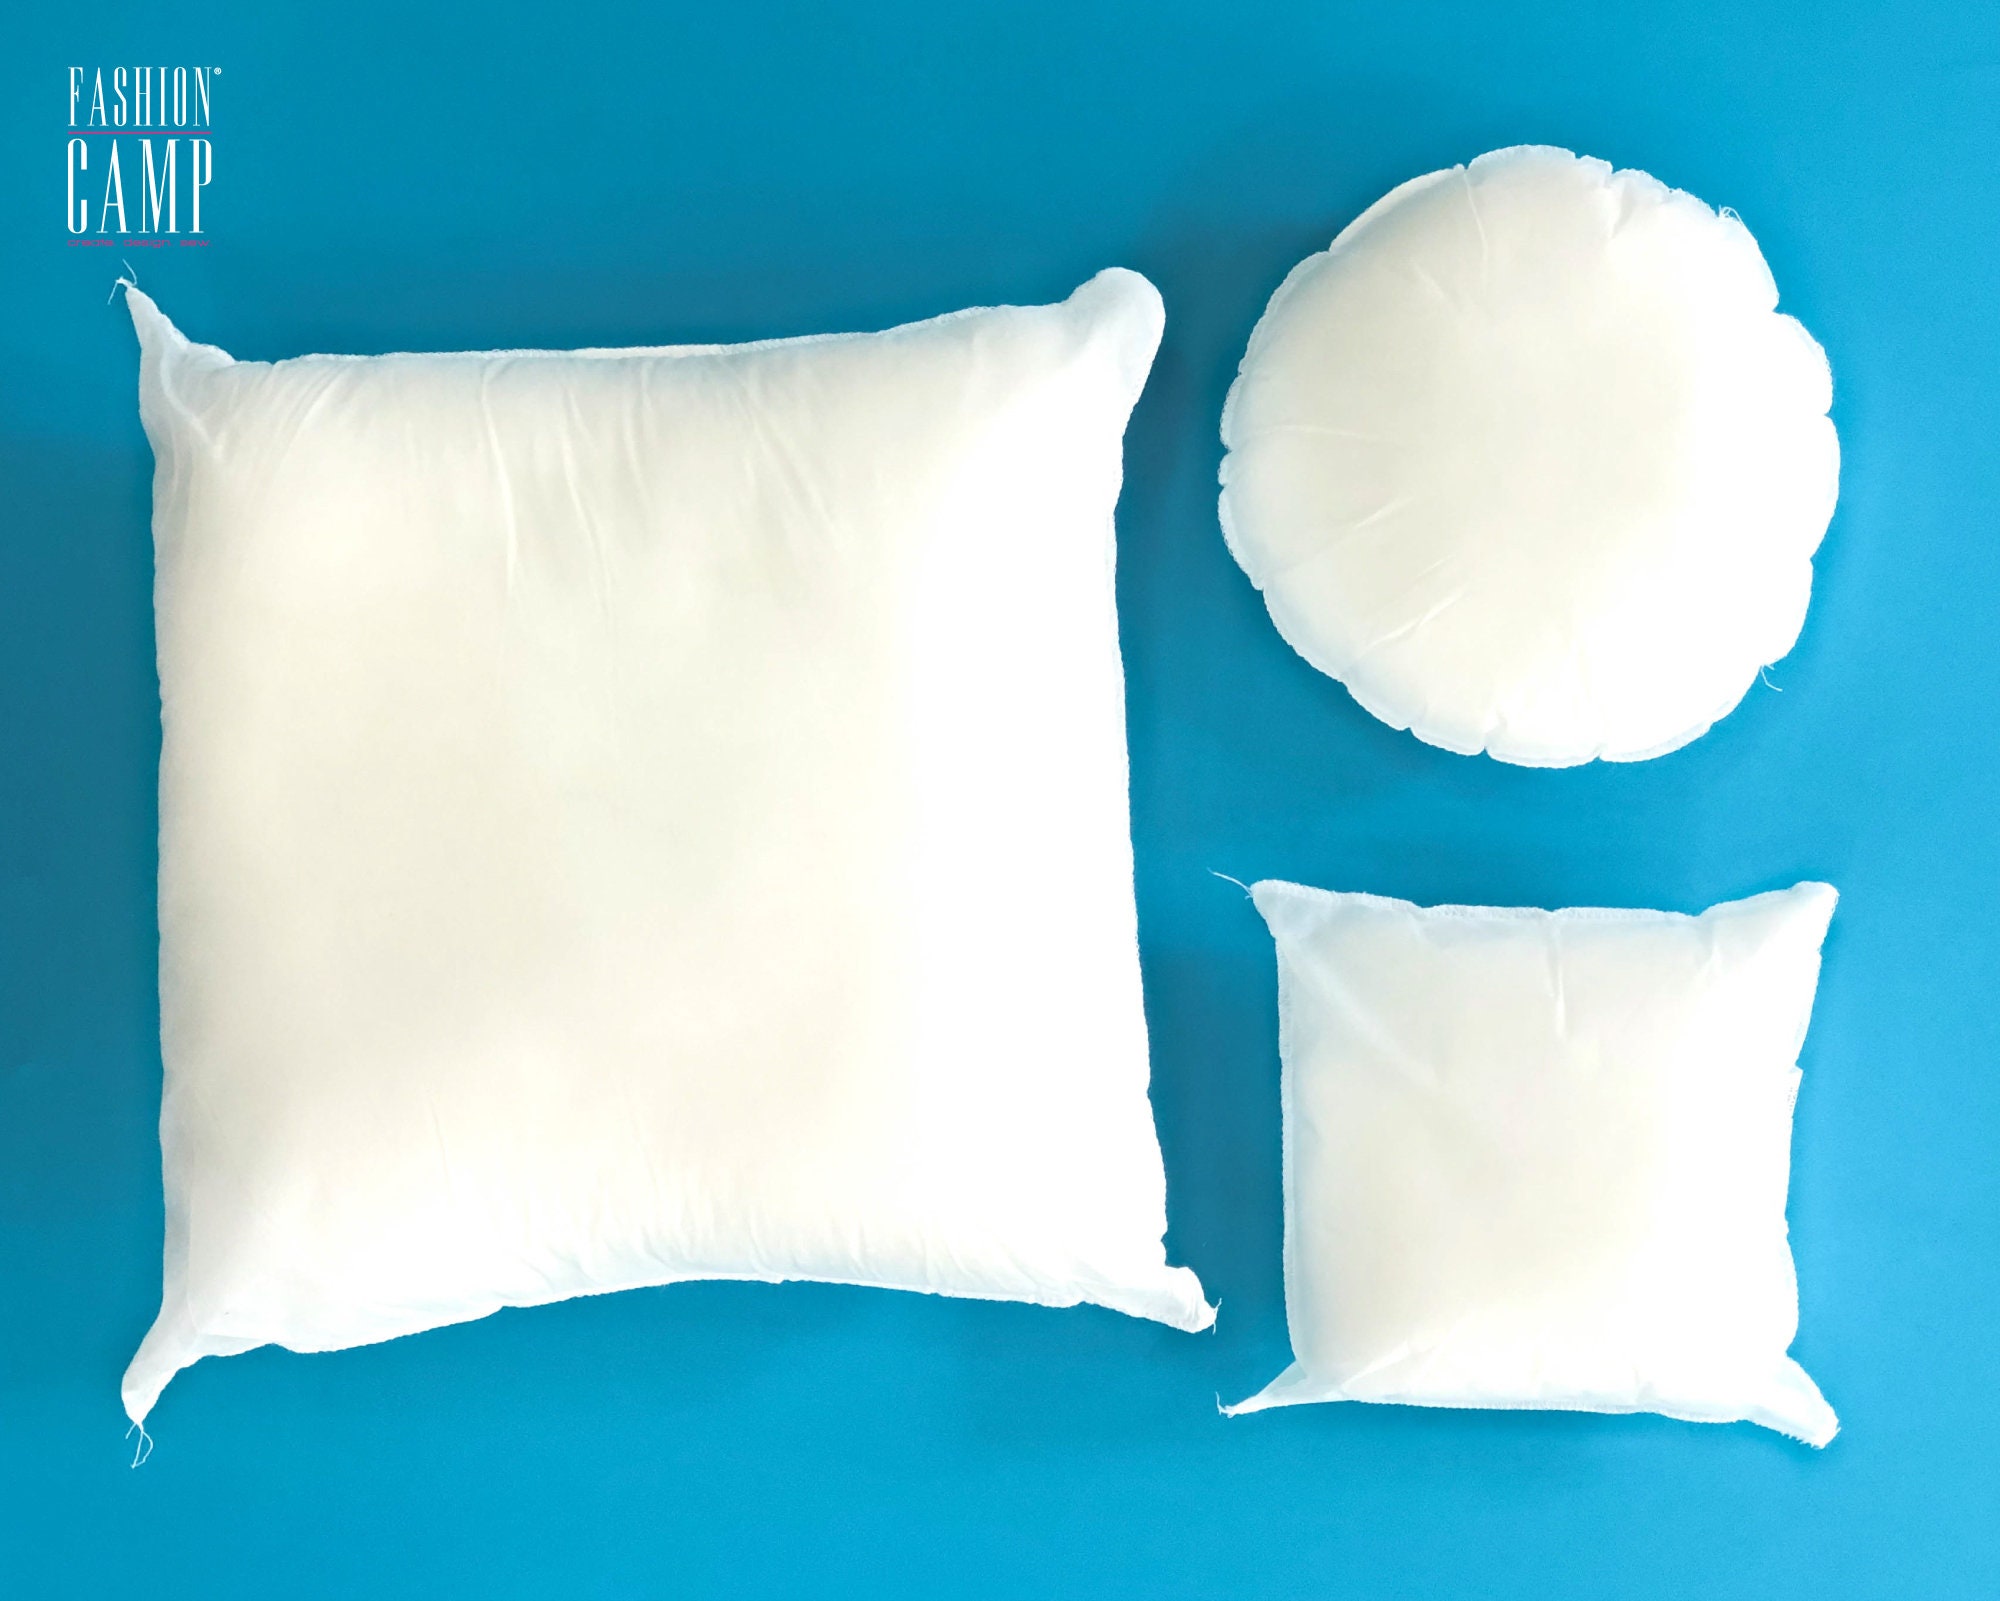 Square Pillow Inserts Mini Small 8x8, 9x9, 12x12, 14x14 Premium